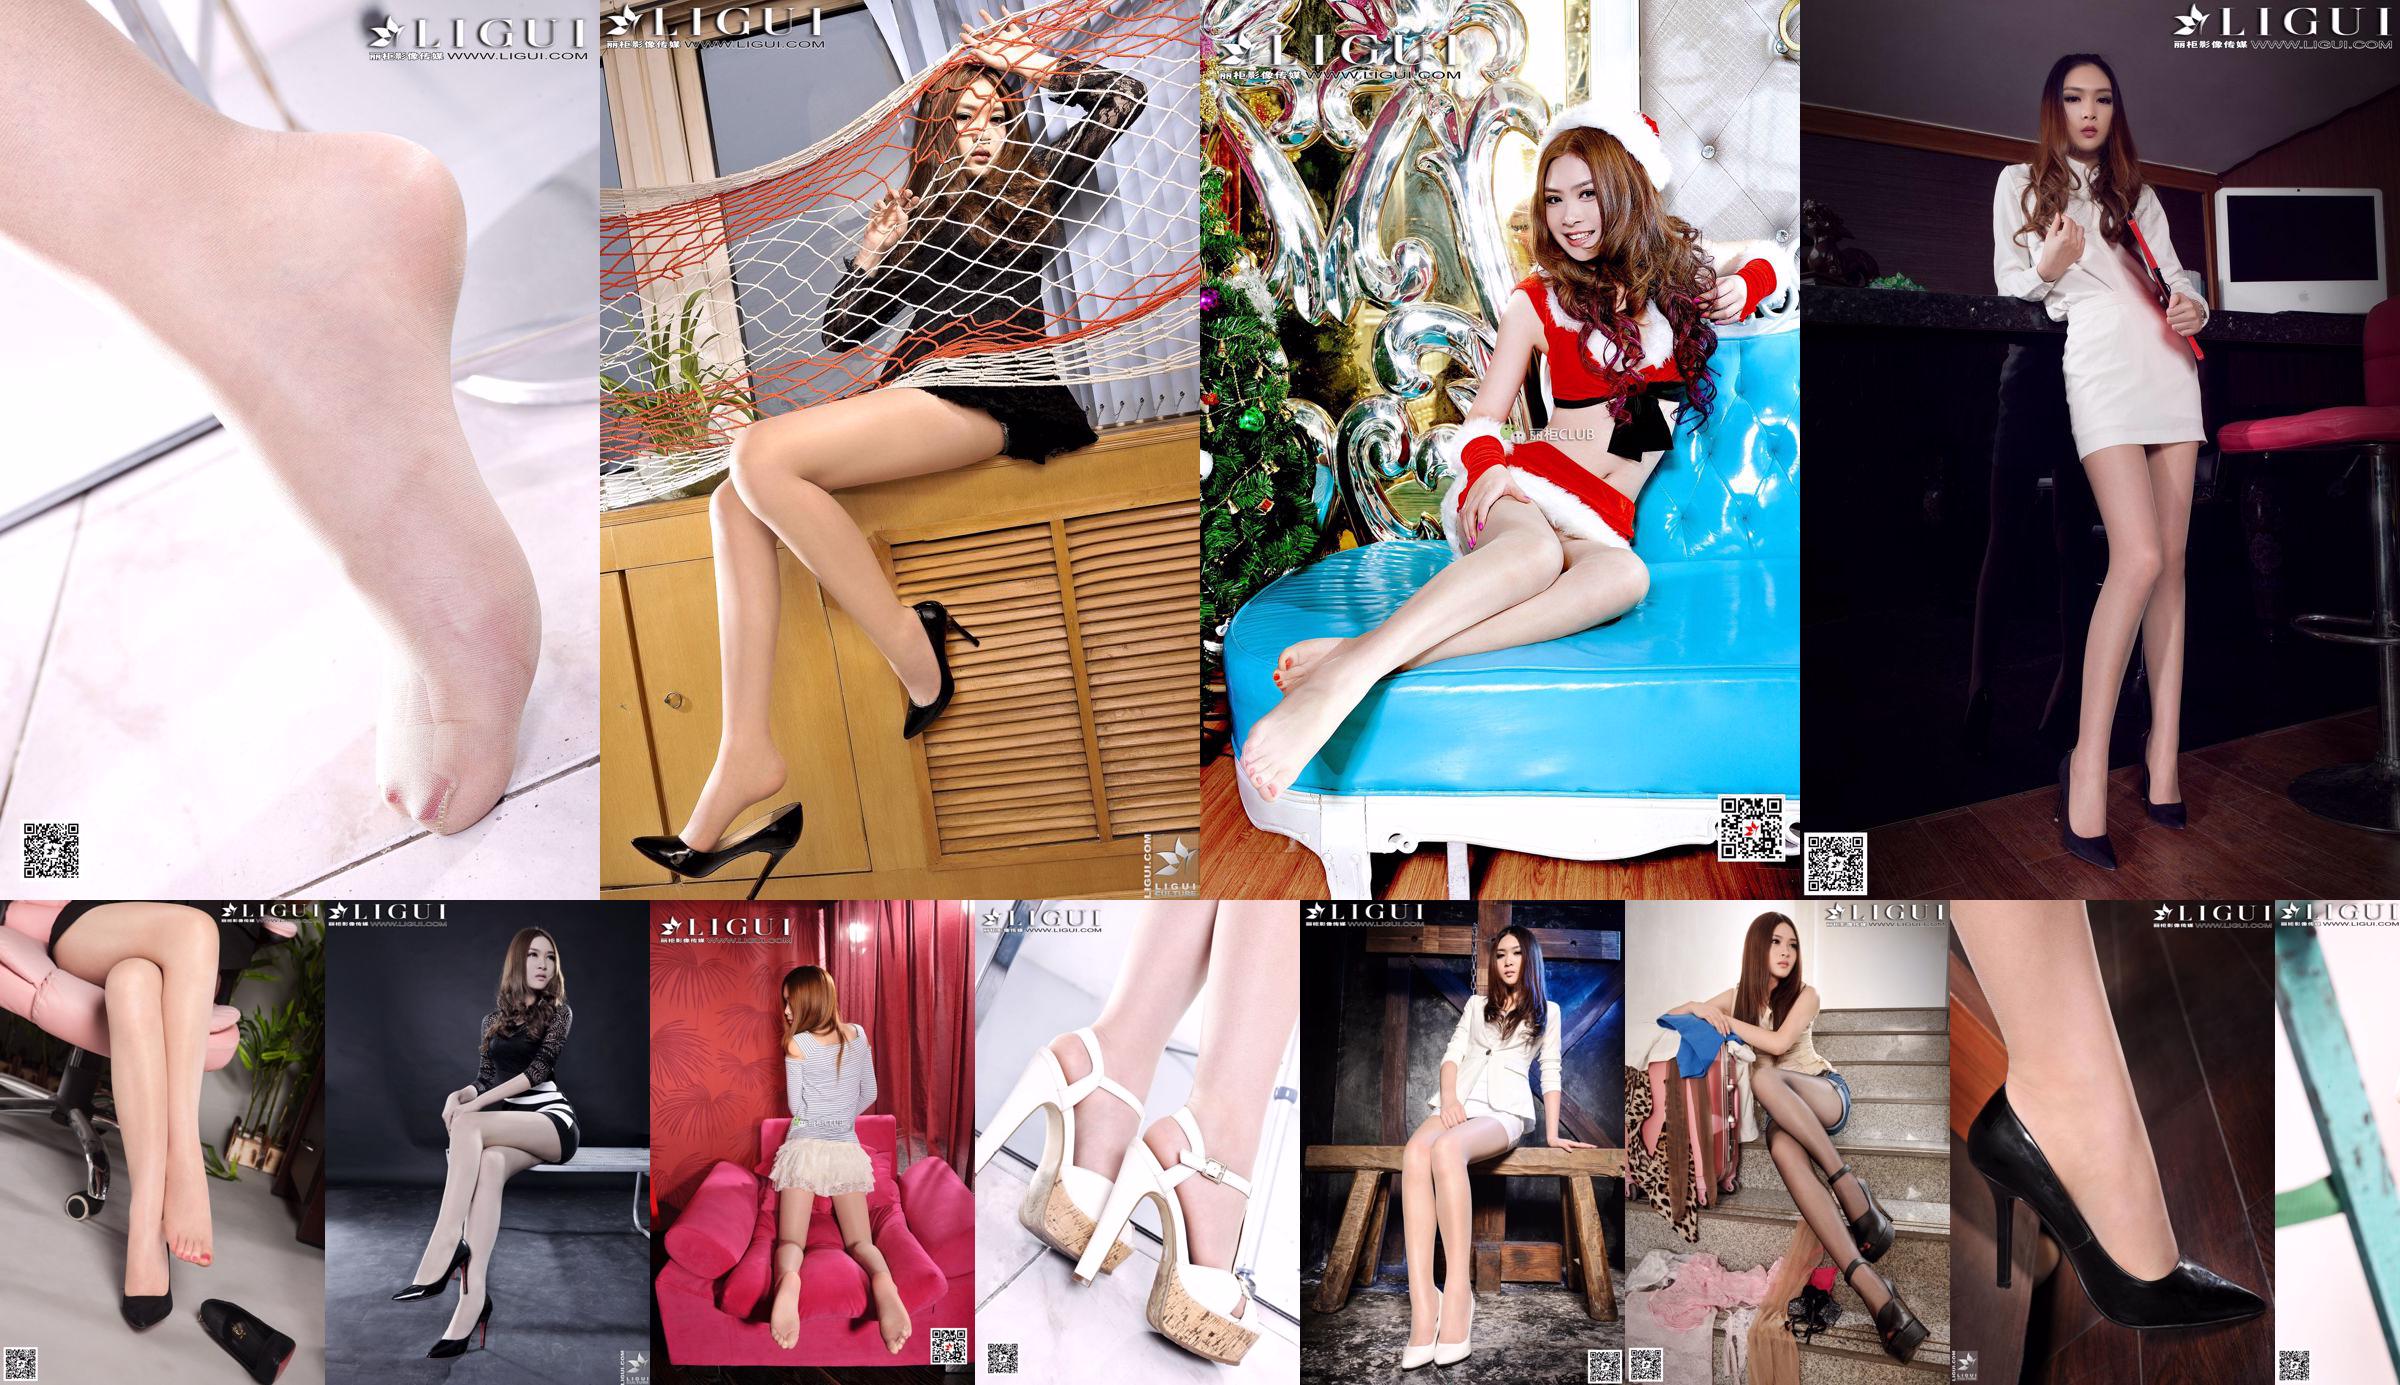 [丽 柜 LiGui] Modello Yoona "Piedi con i tacchi alti sul divano" Belle gambe e foto di piedi di giada foto No.87430c Pagina 1